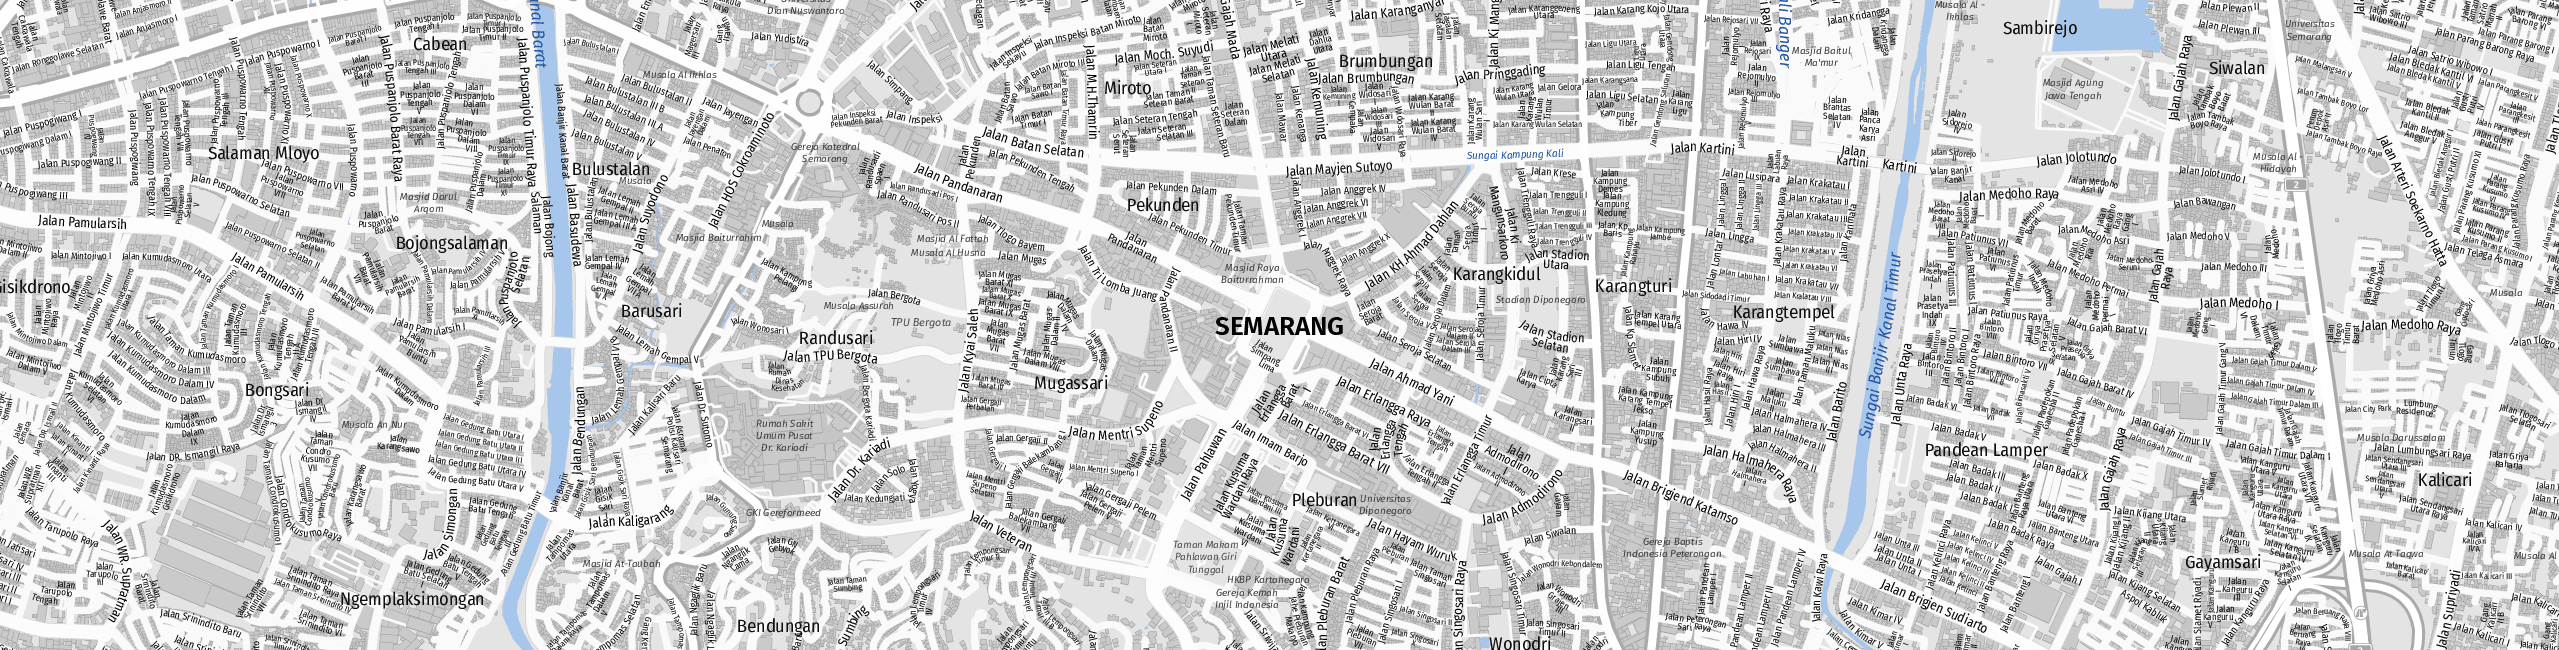 Stadtplan Semarang zum Downloaden.